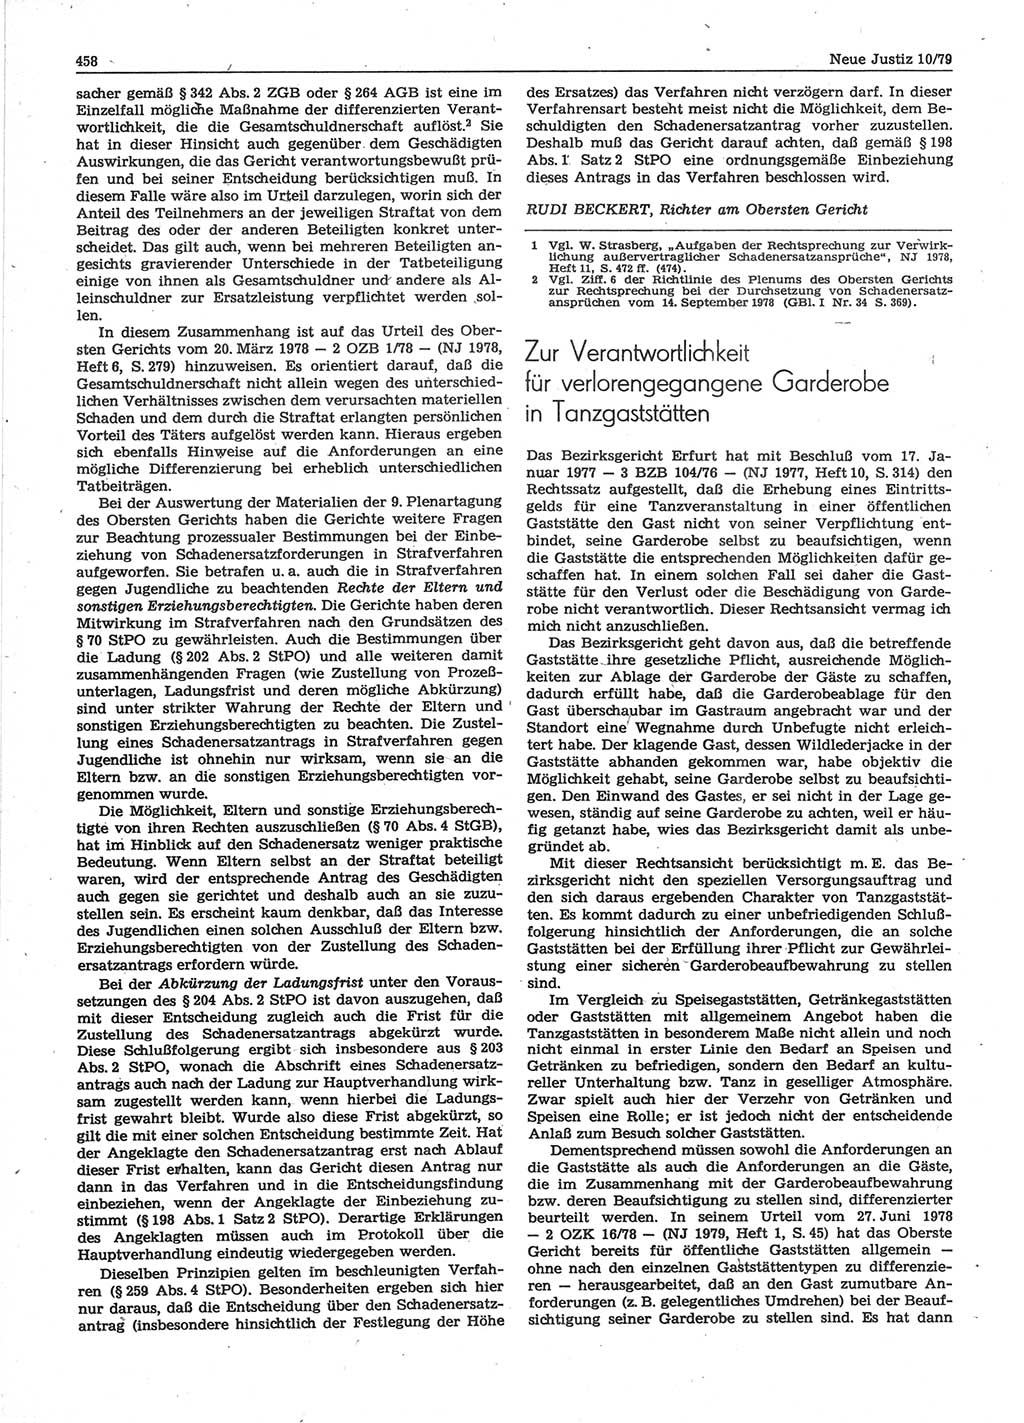 Neue Justiz (NJ), Zeitschrift für sozialistisches Recht und Gesetzlichkeit [Deutsche Demokratische Republik (DDR)], 33. Jahrgang 1979, Seite 458 (NJ DDR 1979, S. 458)